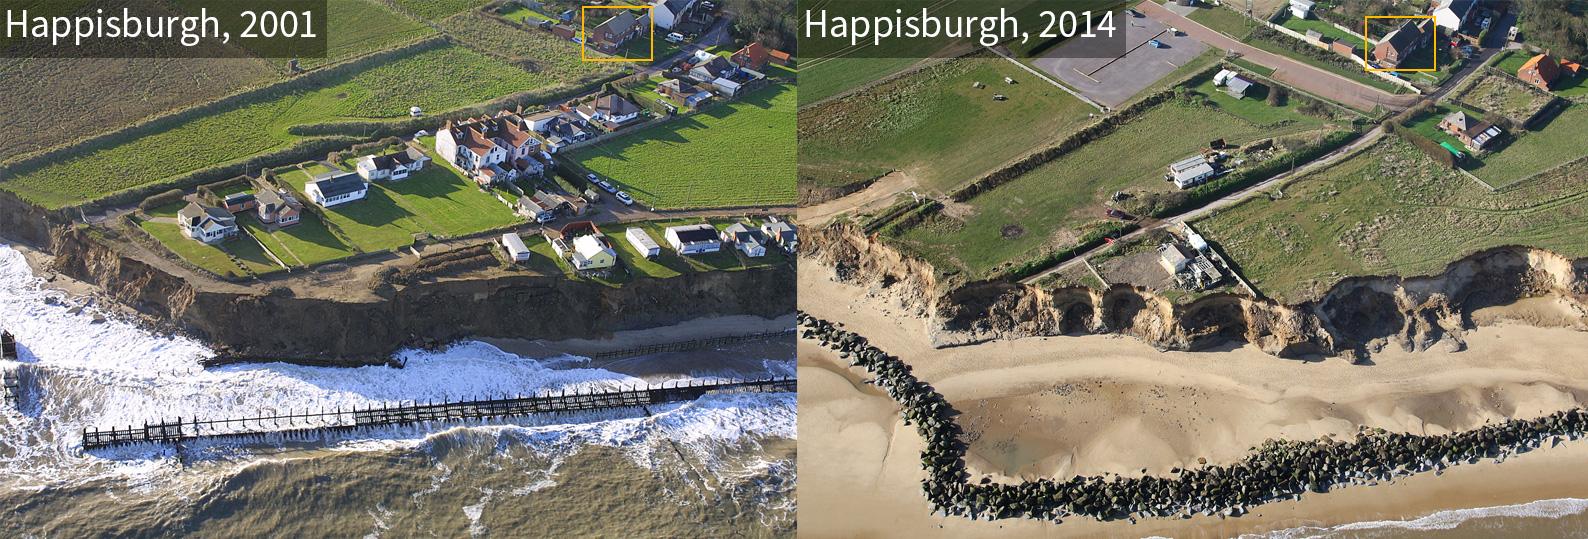 Comparison of Happisburgh coastline in 2001 and 2014